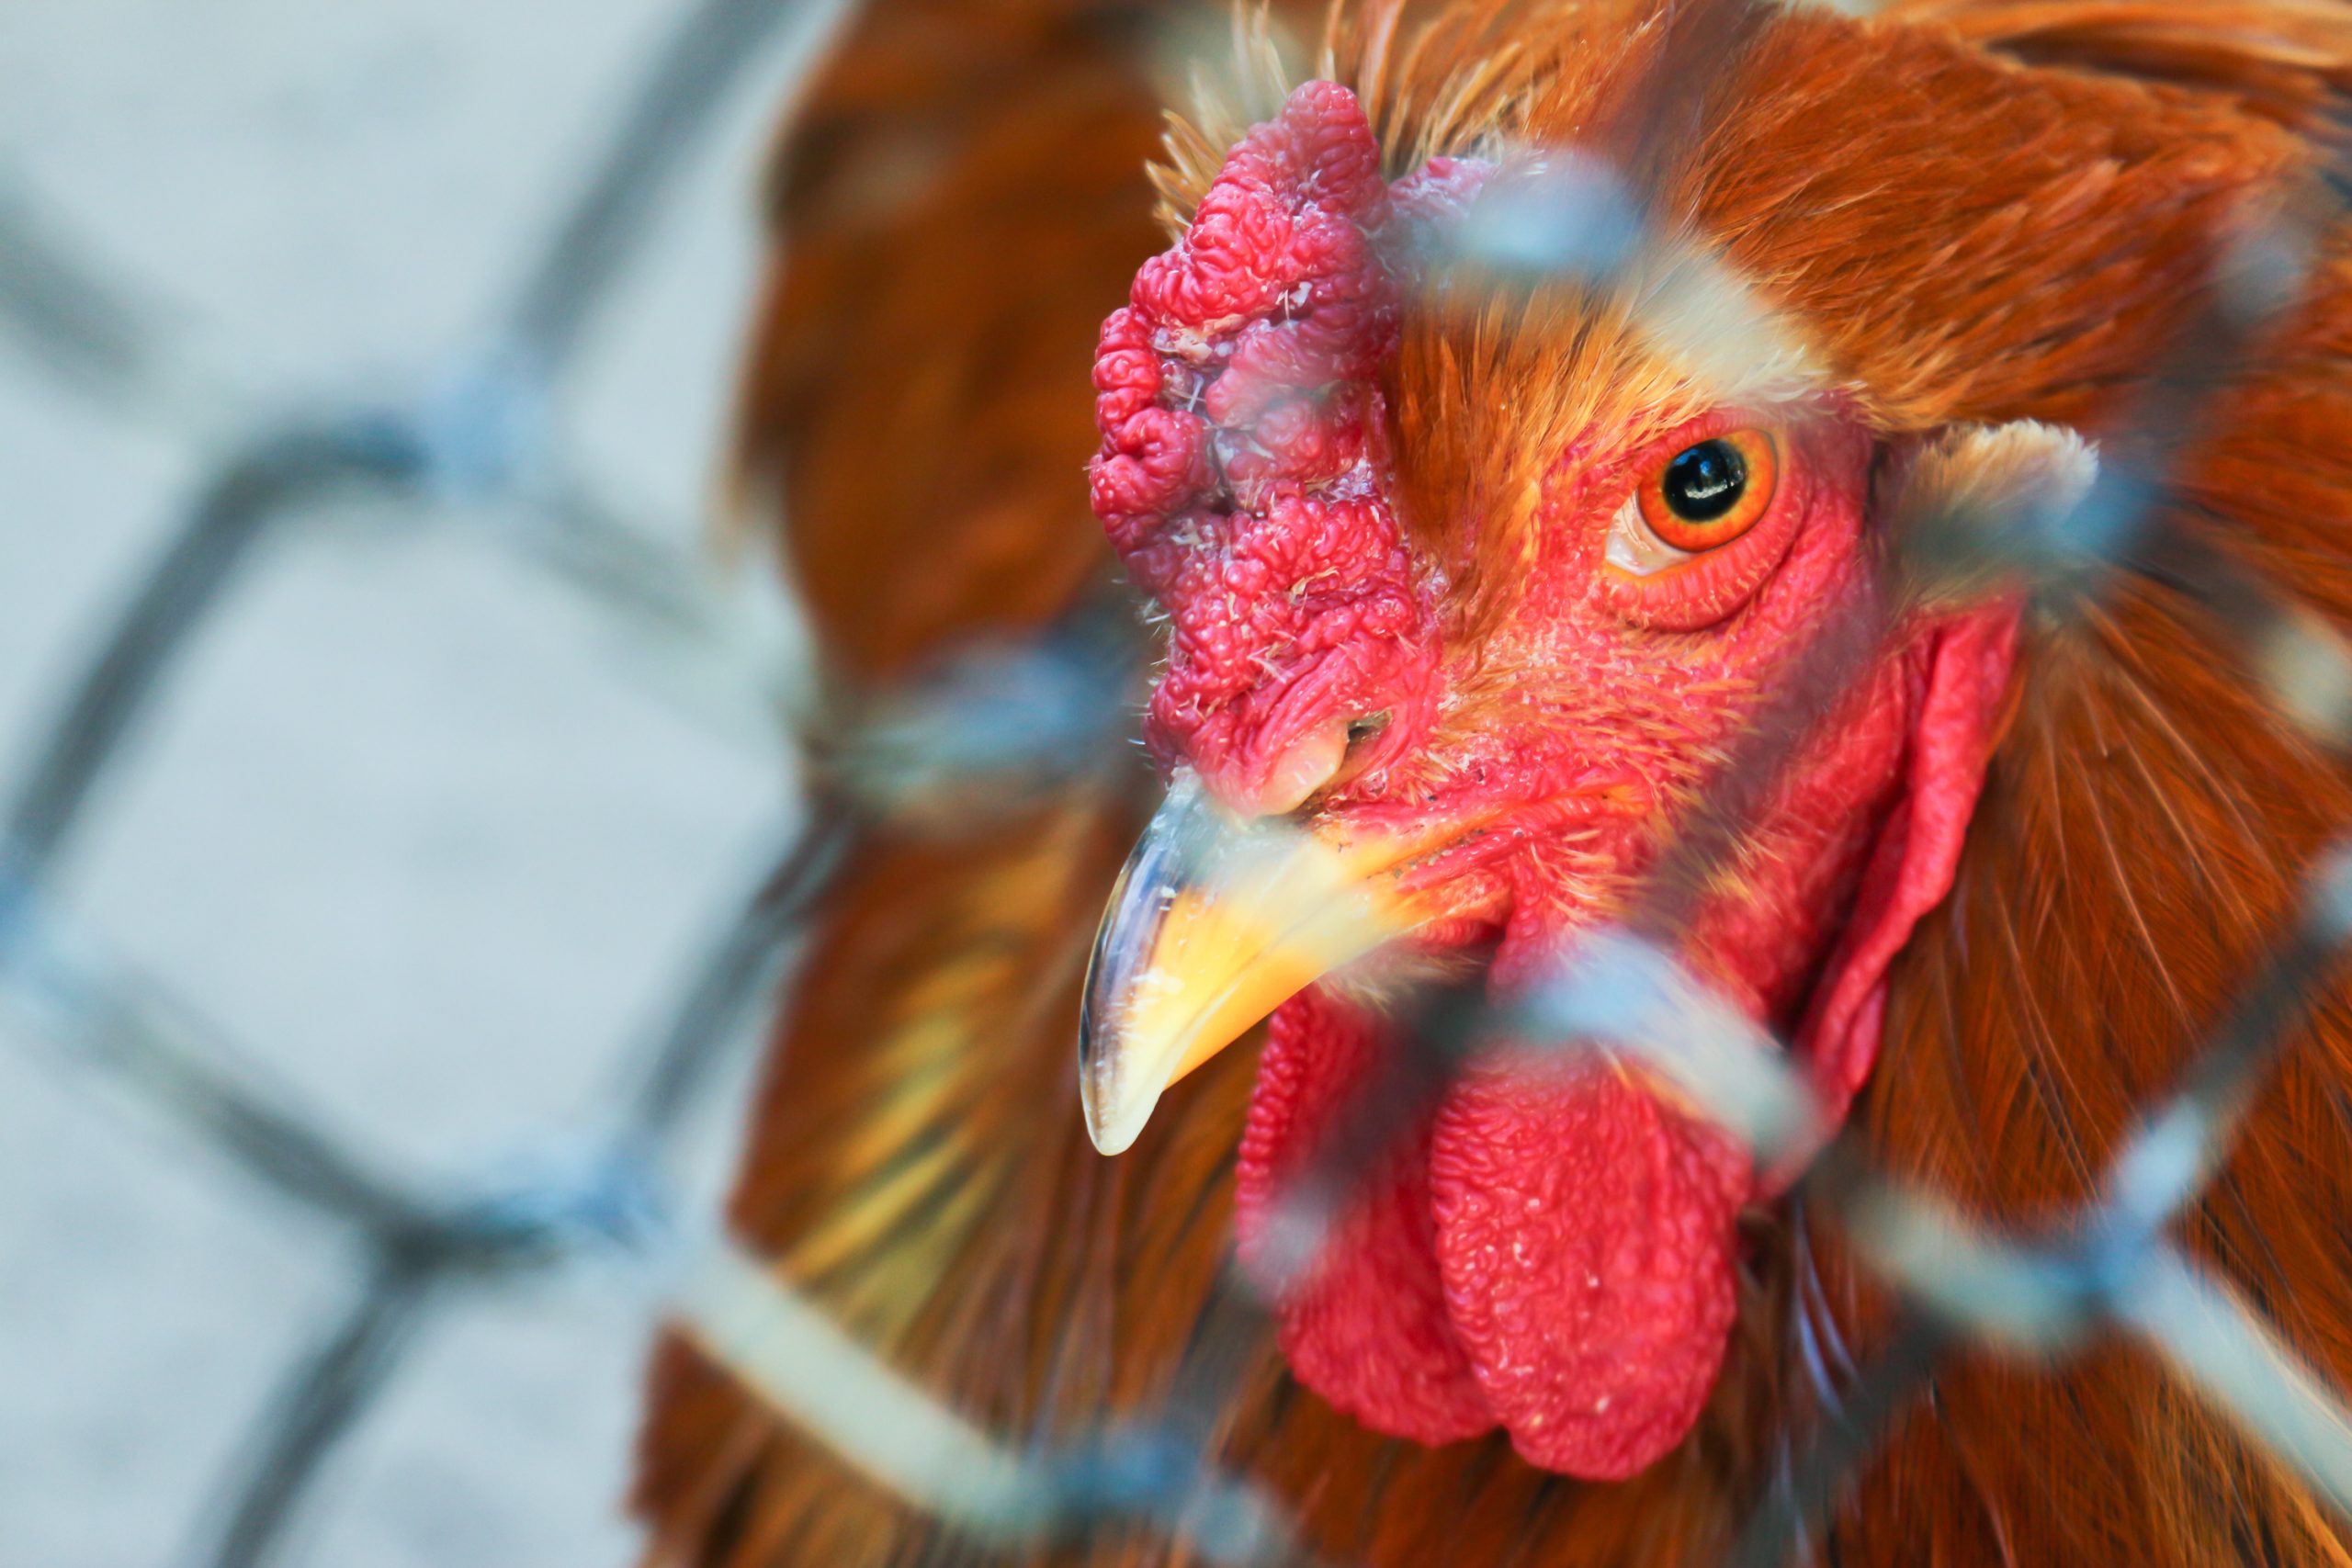 Avian flu outbreak sparks fears over disease in NI